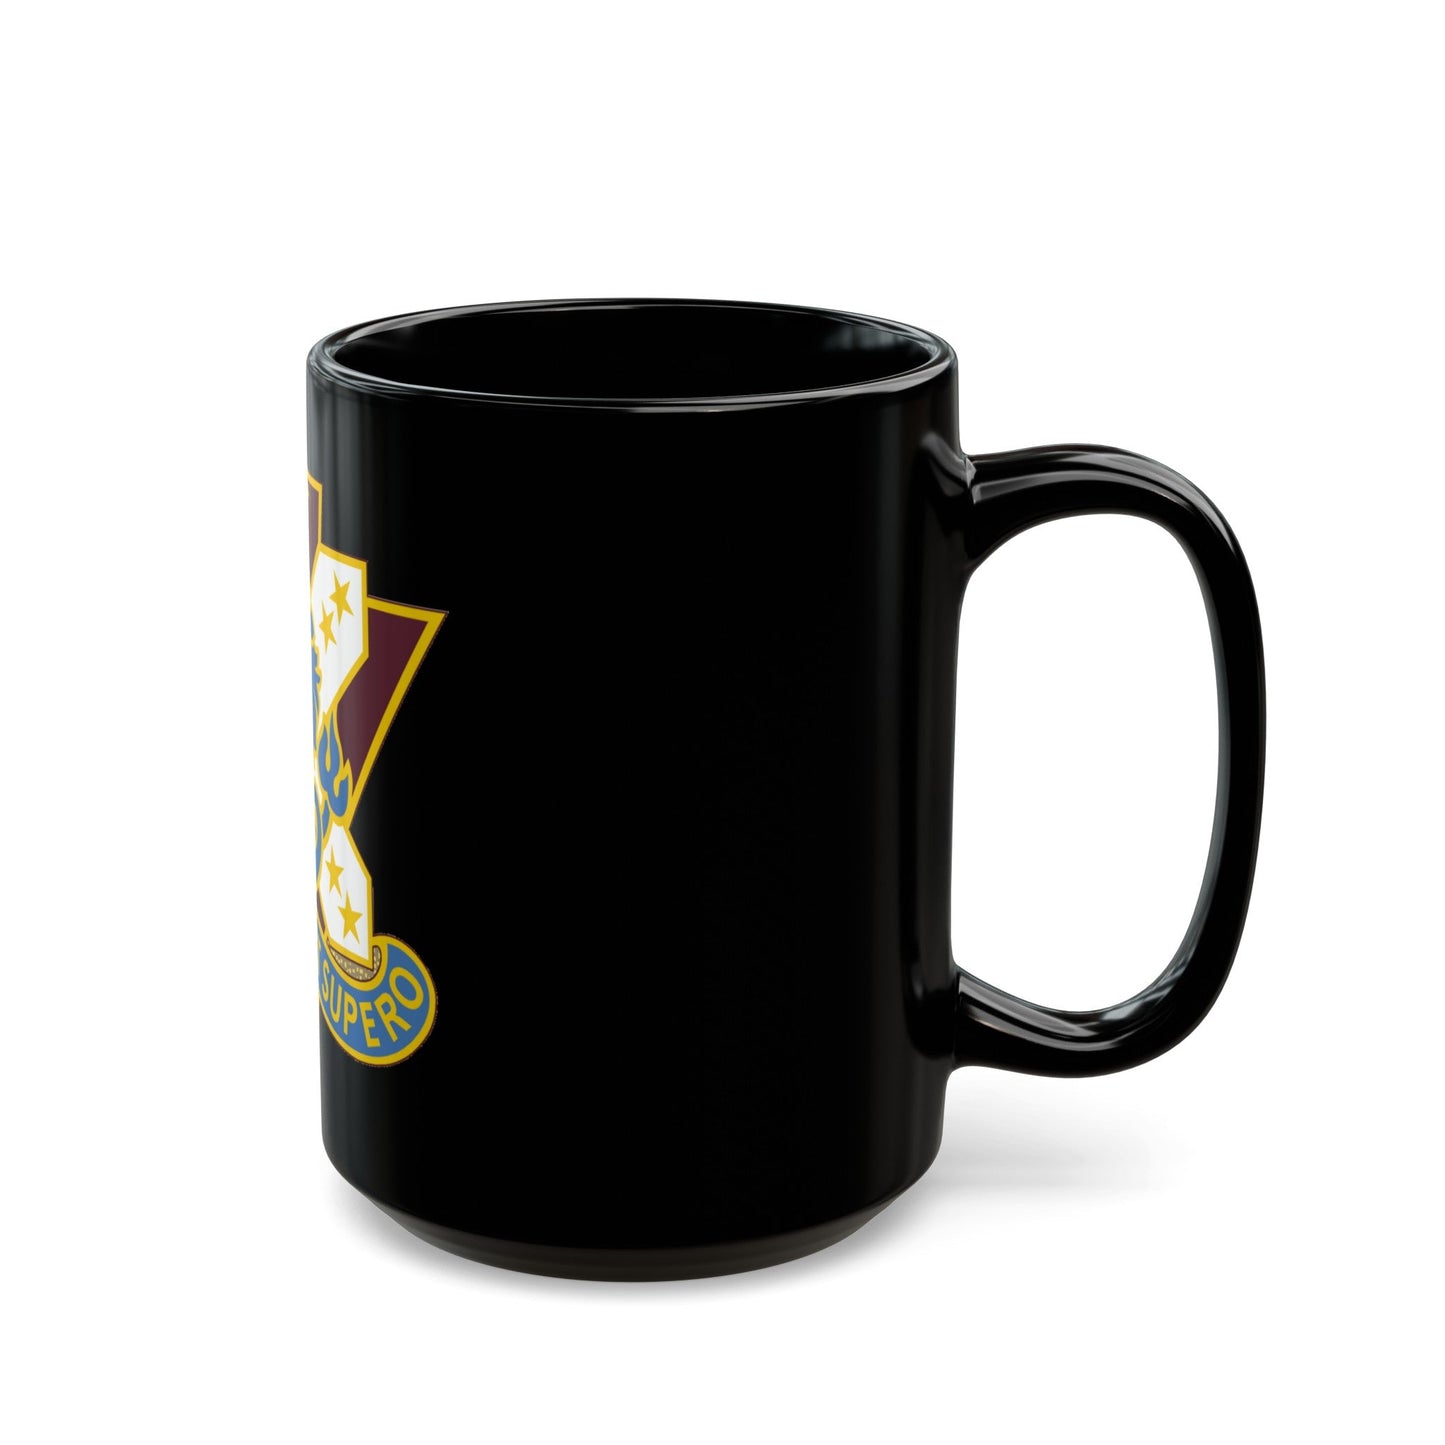 161 Medical Battalion (U.S. Army) Black Coffee Mug-The Sticker Space